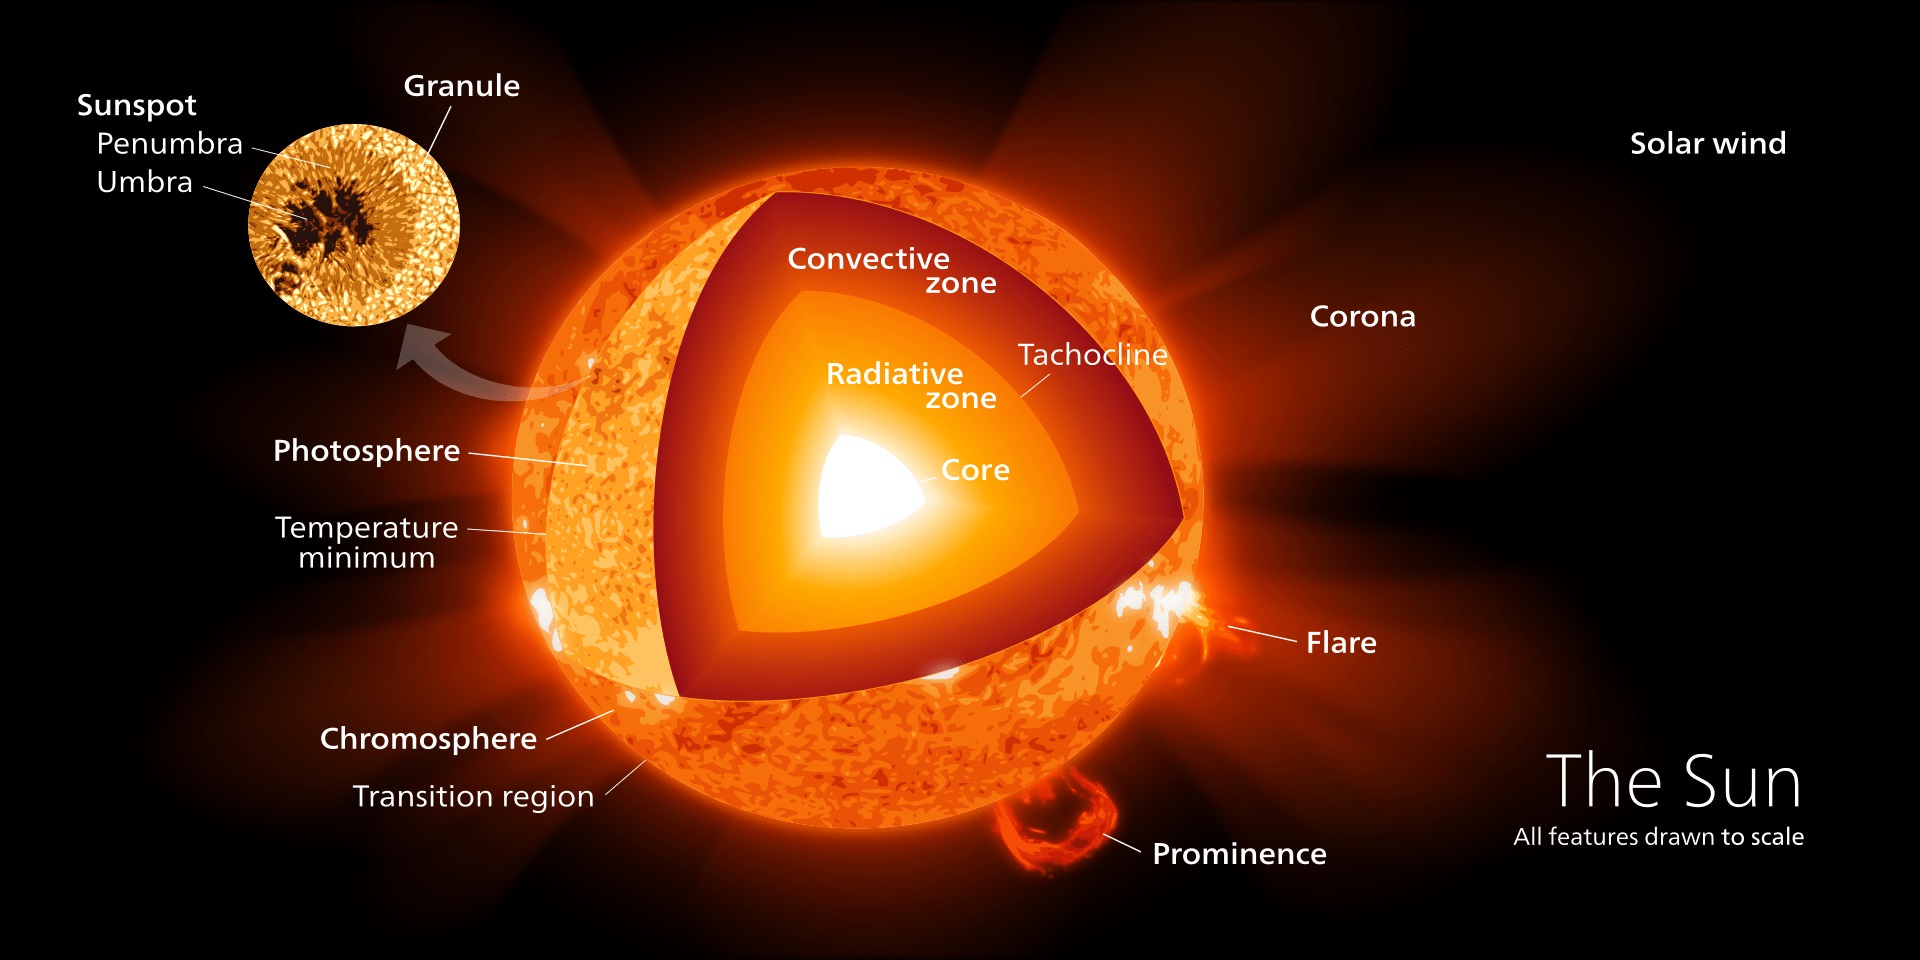 این تصویر نواحی مختلف سطح و درون خورشید ازجمله هسته، تنها مکان وقوع همجوشی هسته‌ای را نشان می‌دهد. این تابش تولیدشده در هسته خورشید است که دربرابر گرانش مقاومت می‌کند.